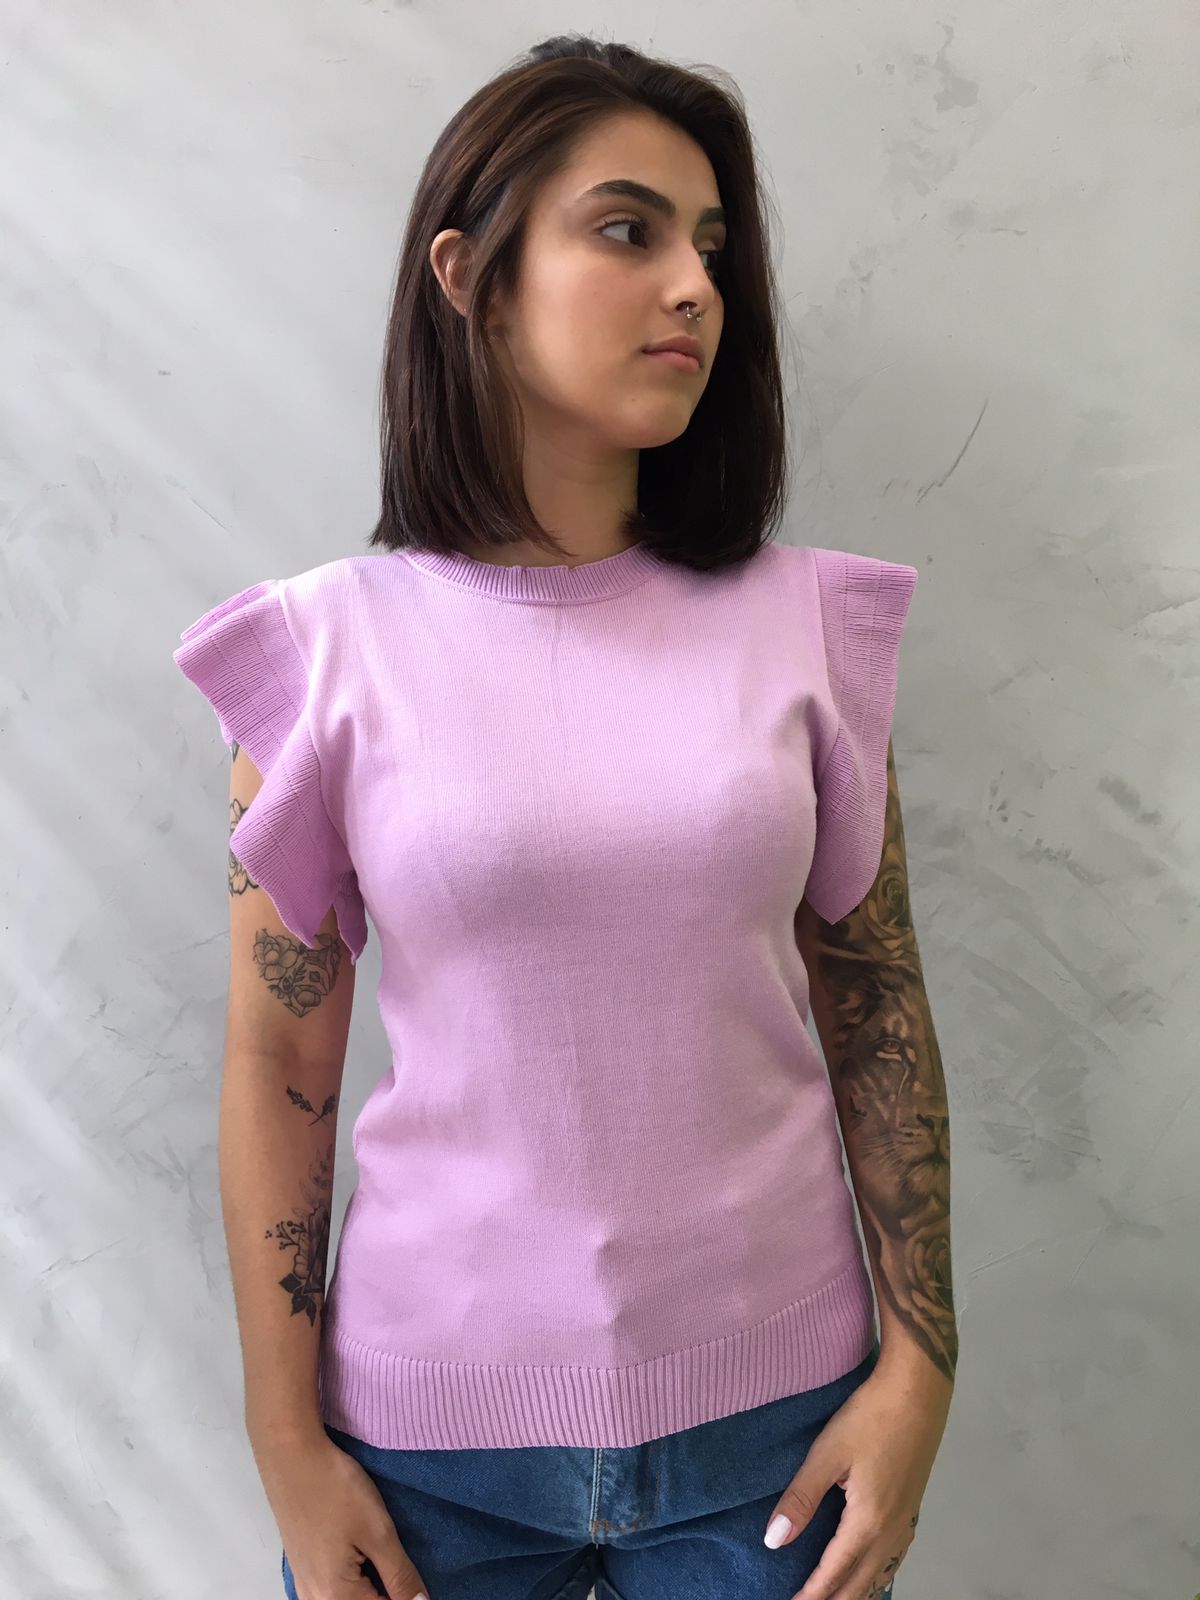 Blusa de Tricot com babado manga lilas